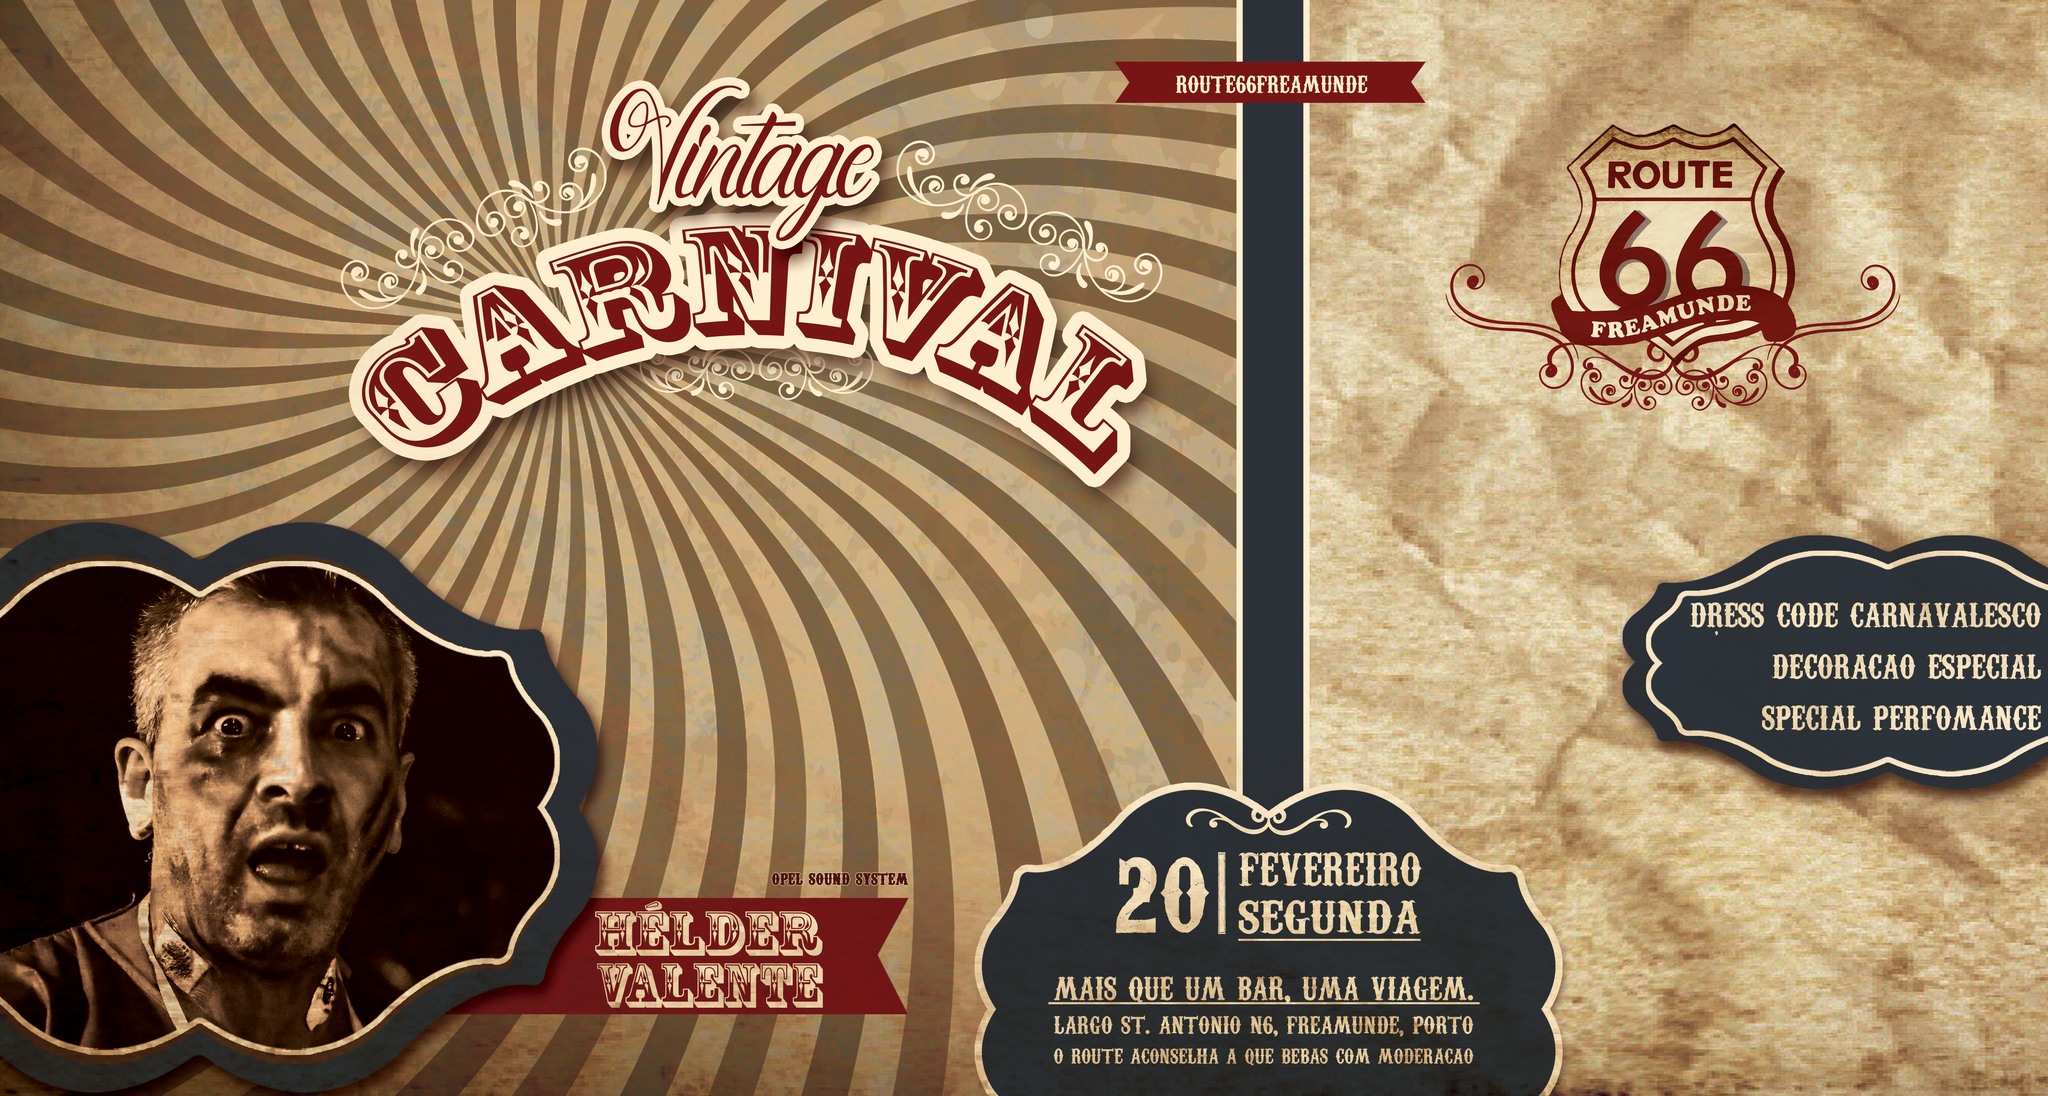 Vintage Carnaval on ROUTE66 - SEGUNDA 20 FEV